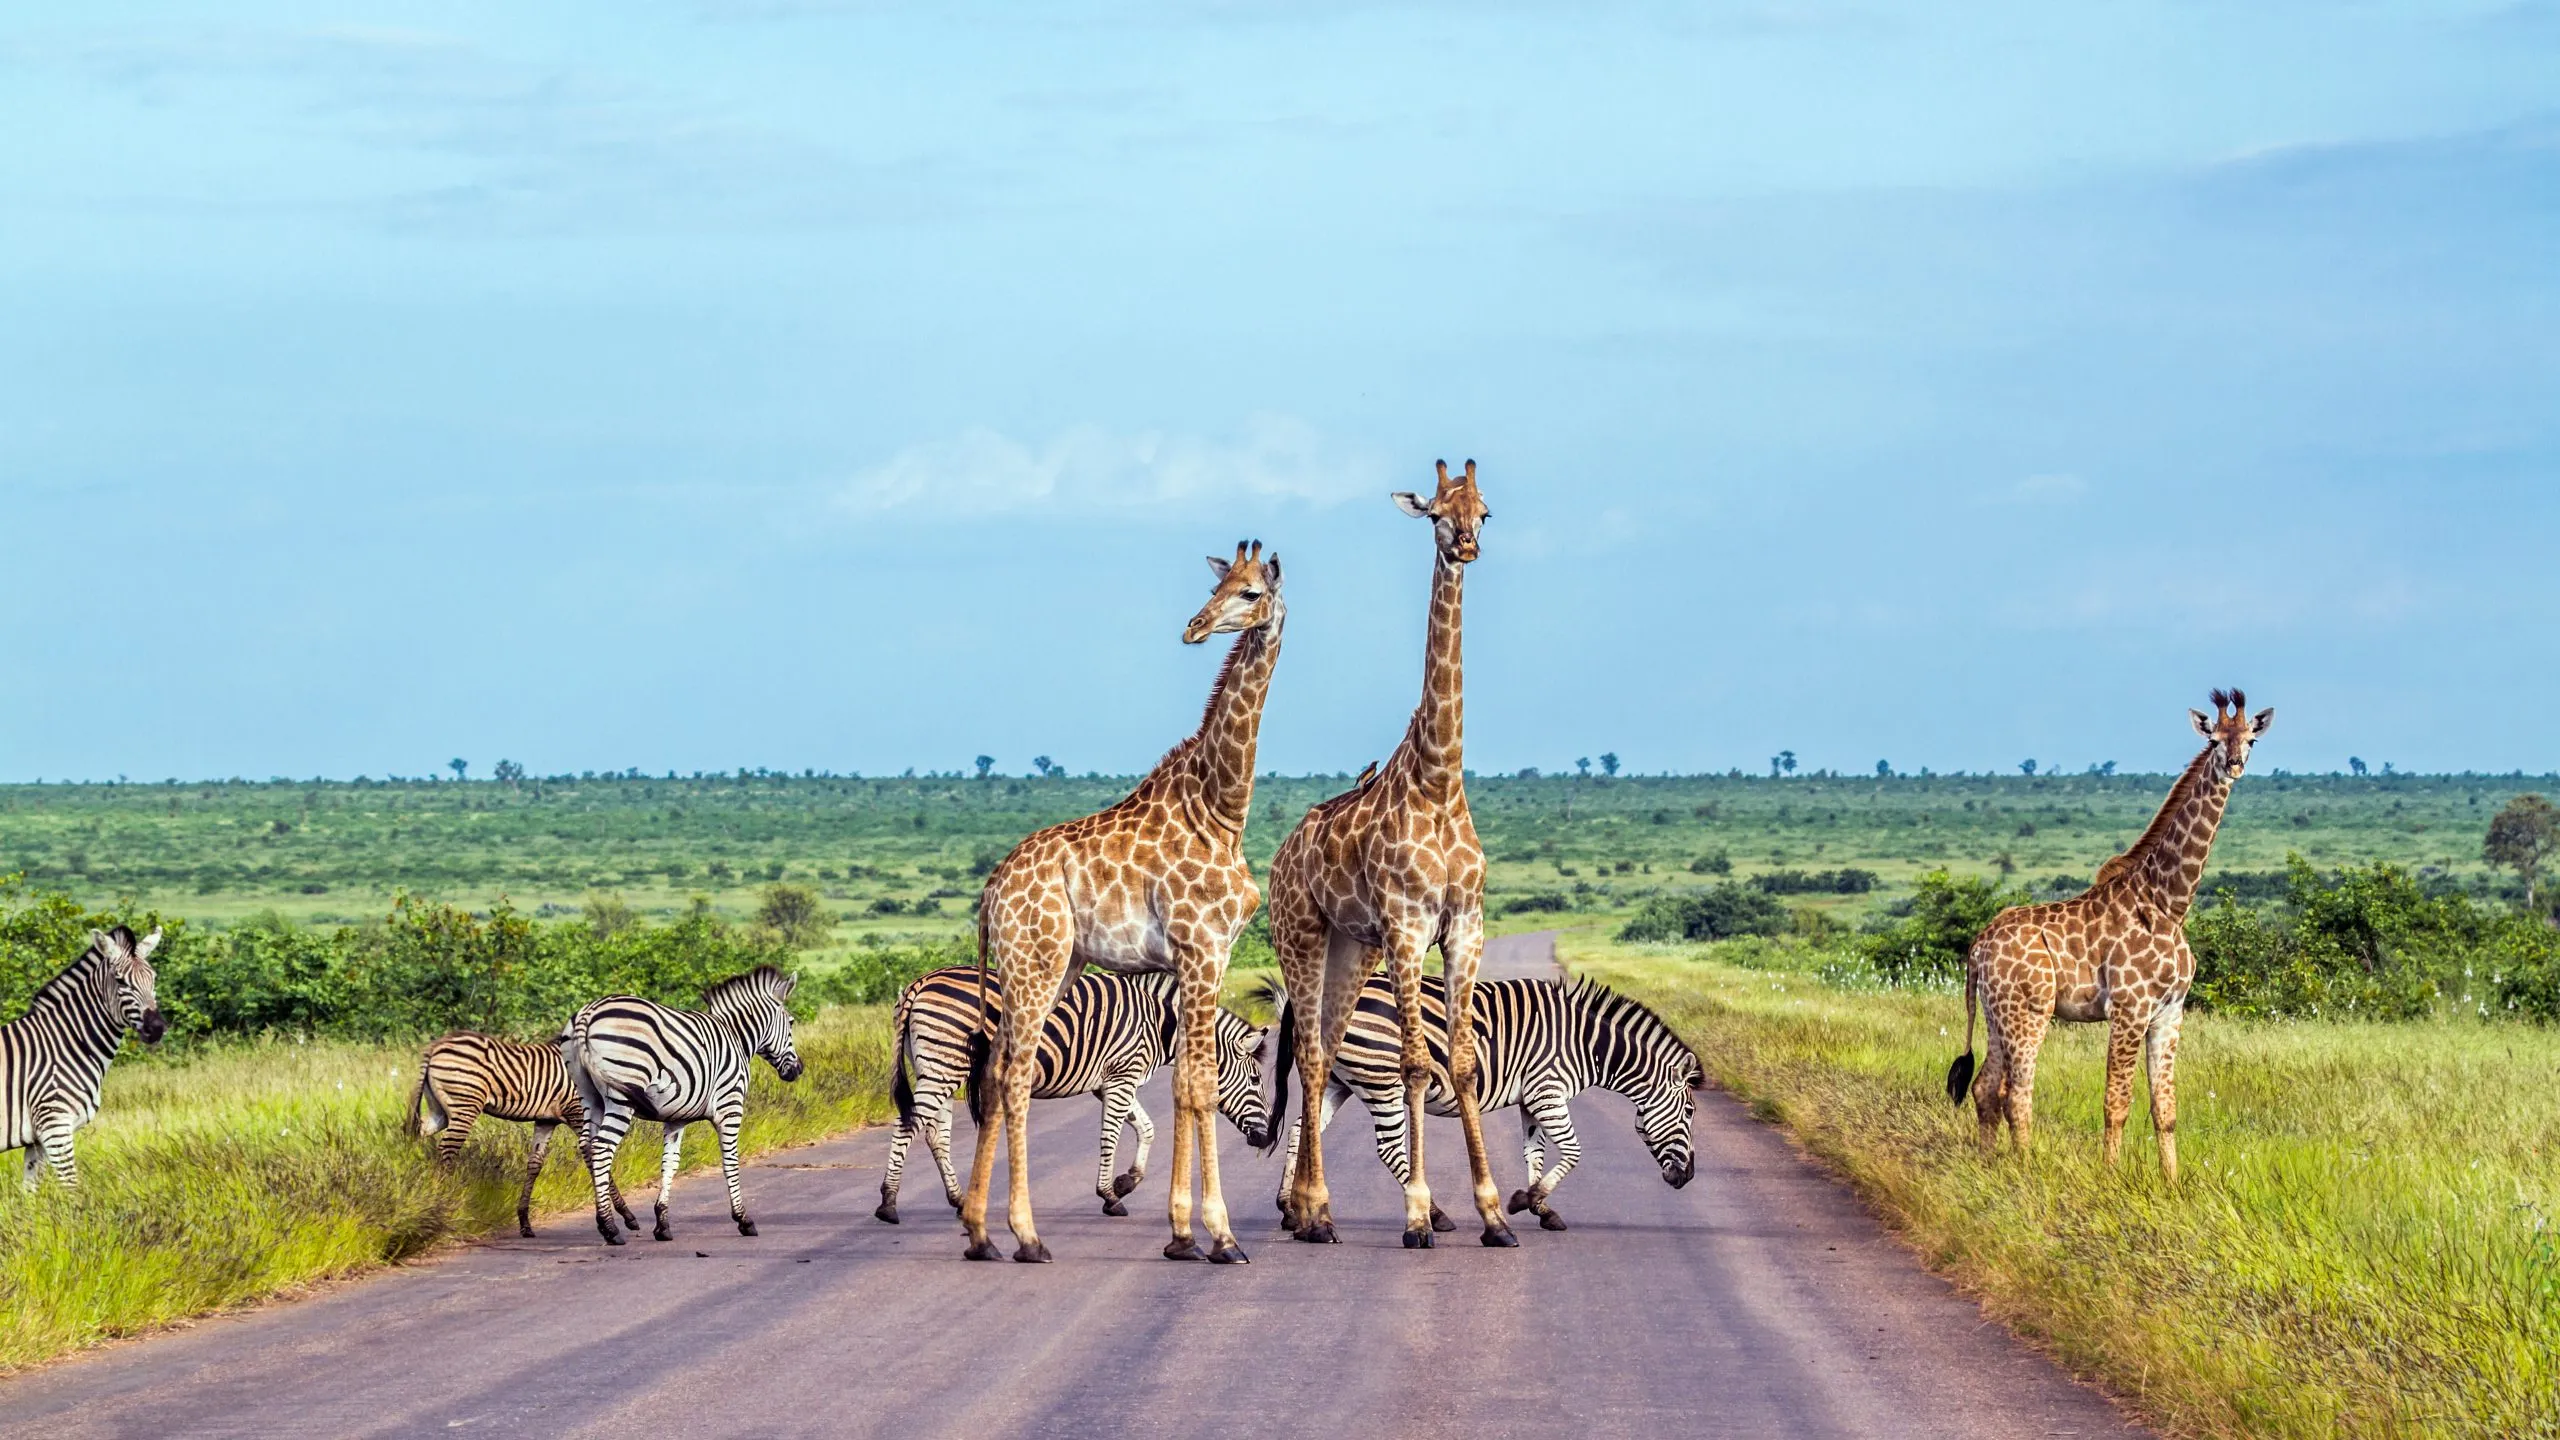 Girafa e zebra das planícies no Parque Nacional Kruger, África do Sul